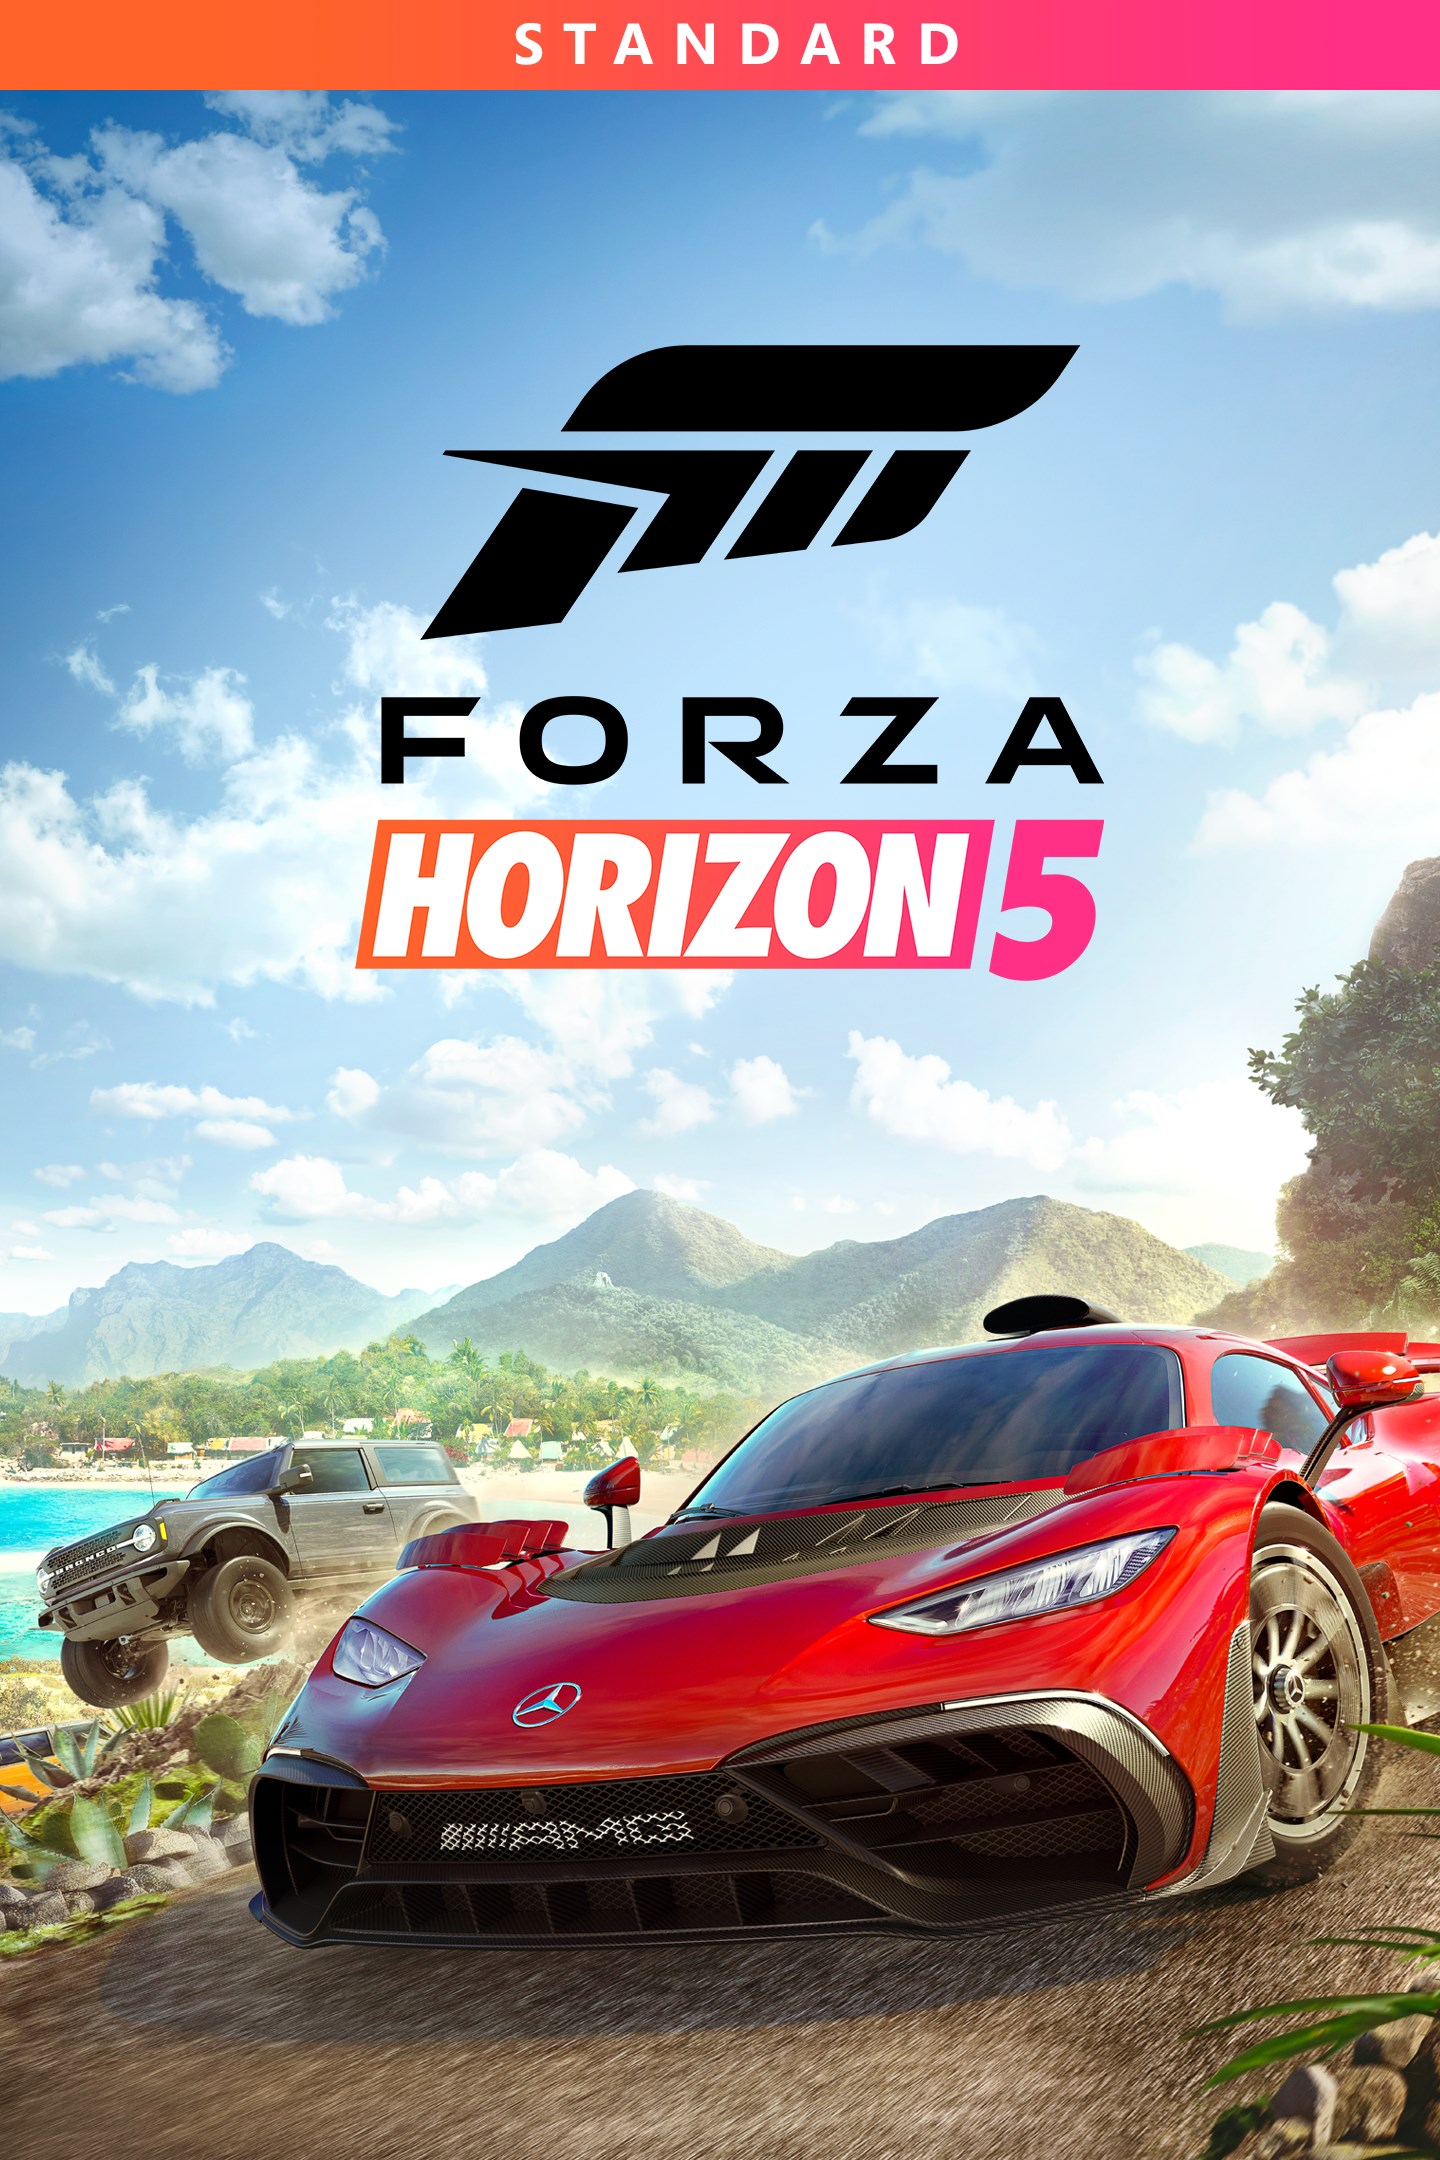 Forza Horizon 5 Standard Edition box shot